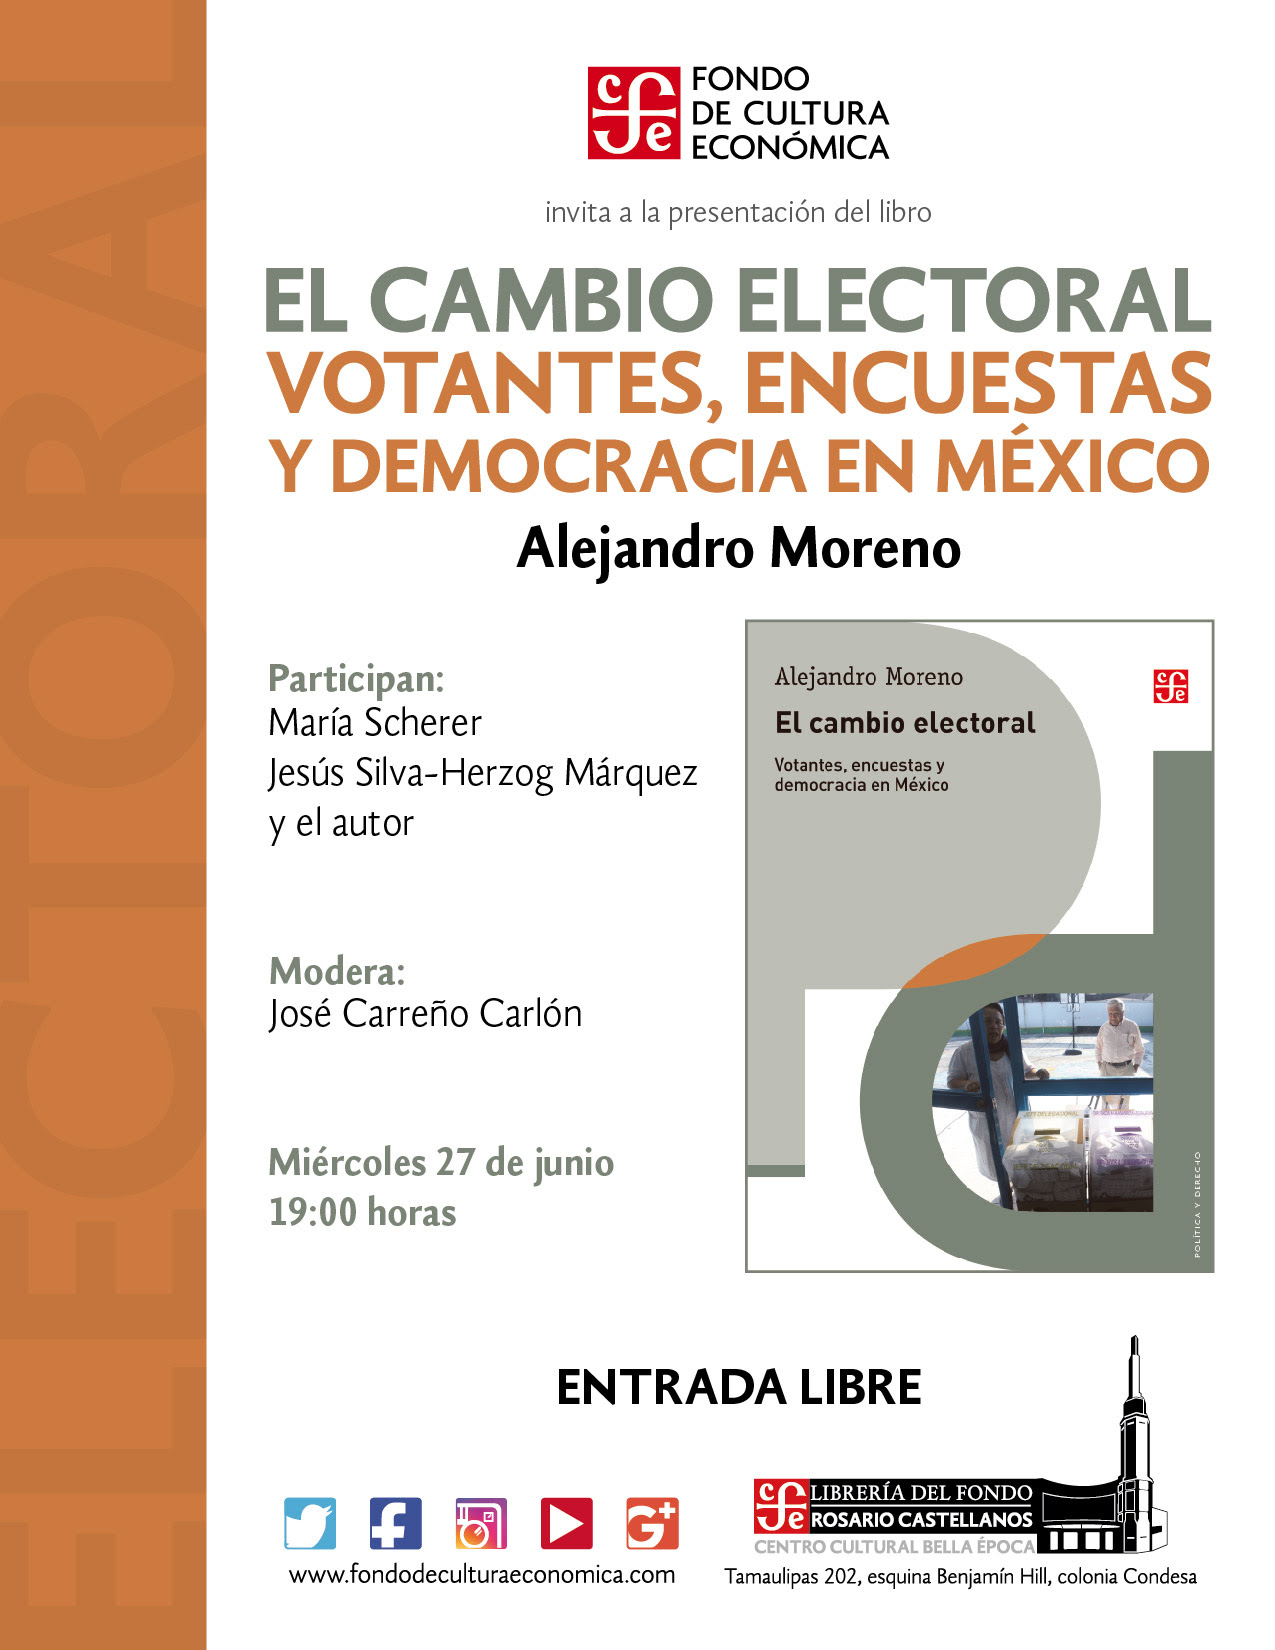 El cambio electoral. Votantes, encuestas y democracia en México